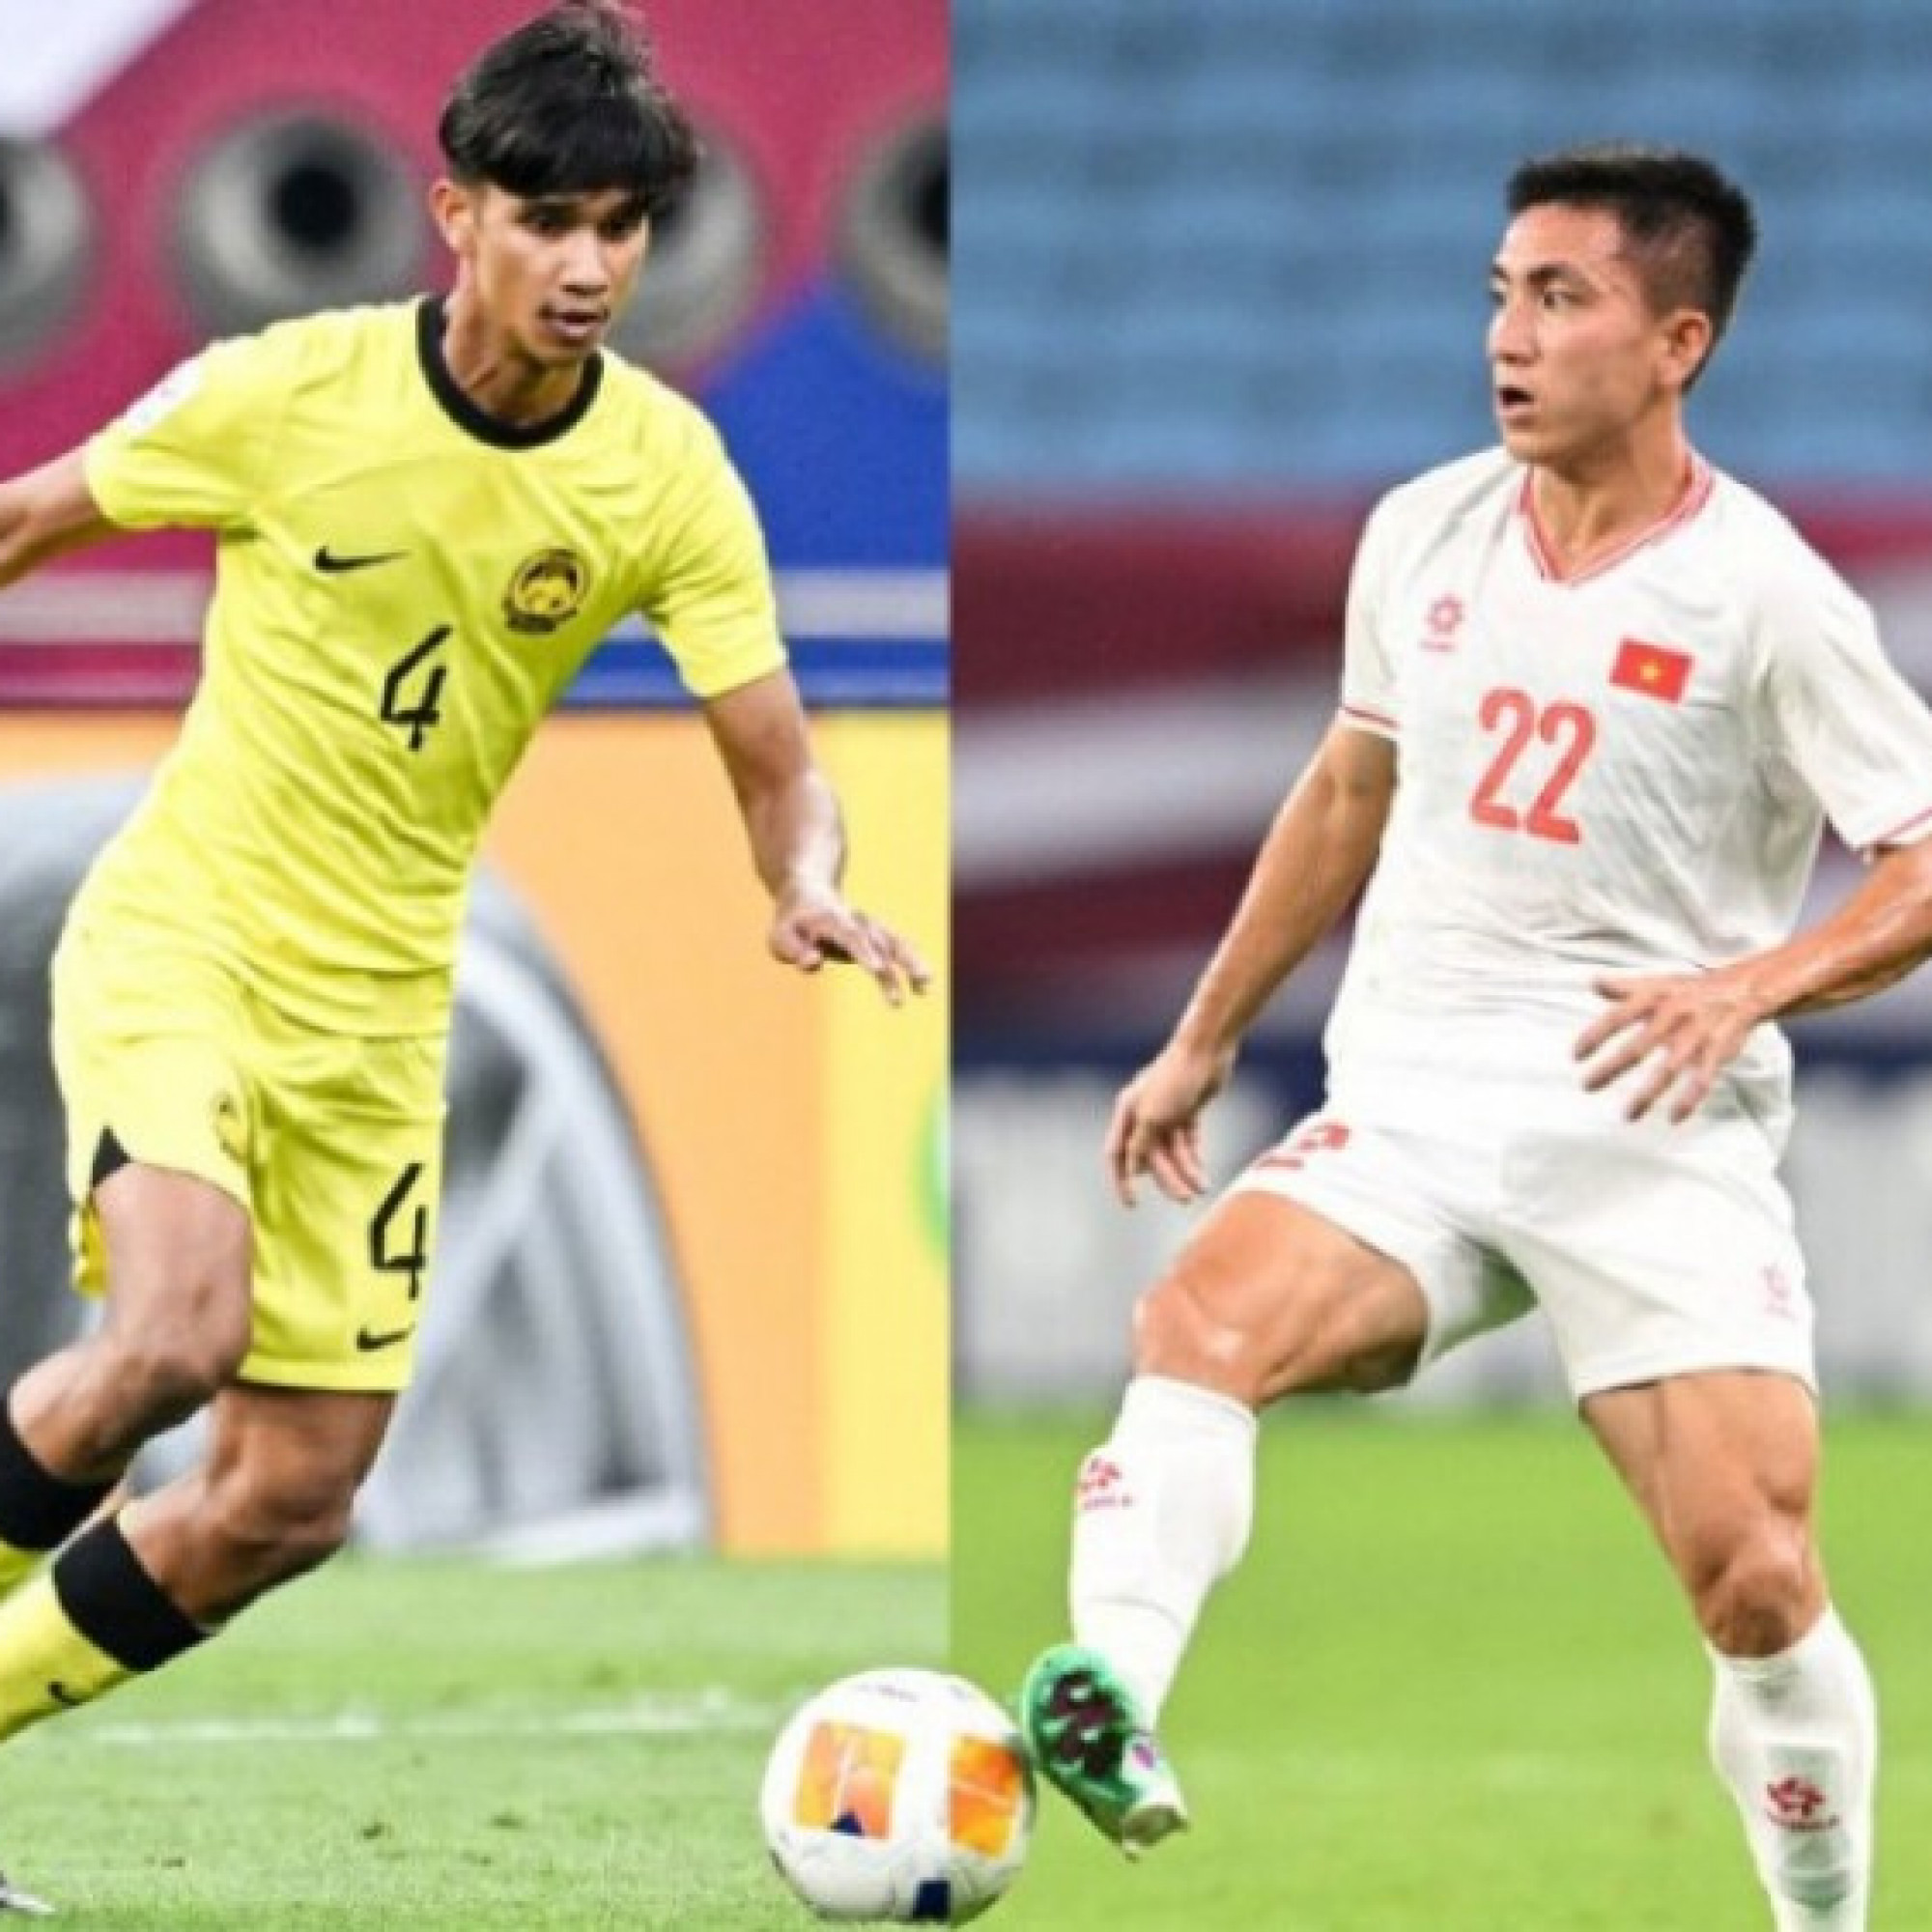  - Trực tiếp bóng đá U23 Việt Nam - U23 Malaysia: Tỉnh táo quyết đấu lấy 3 điểm (U23 châu Á)